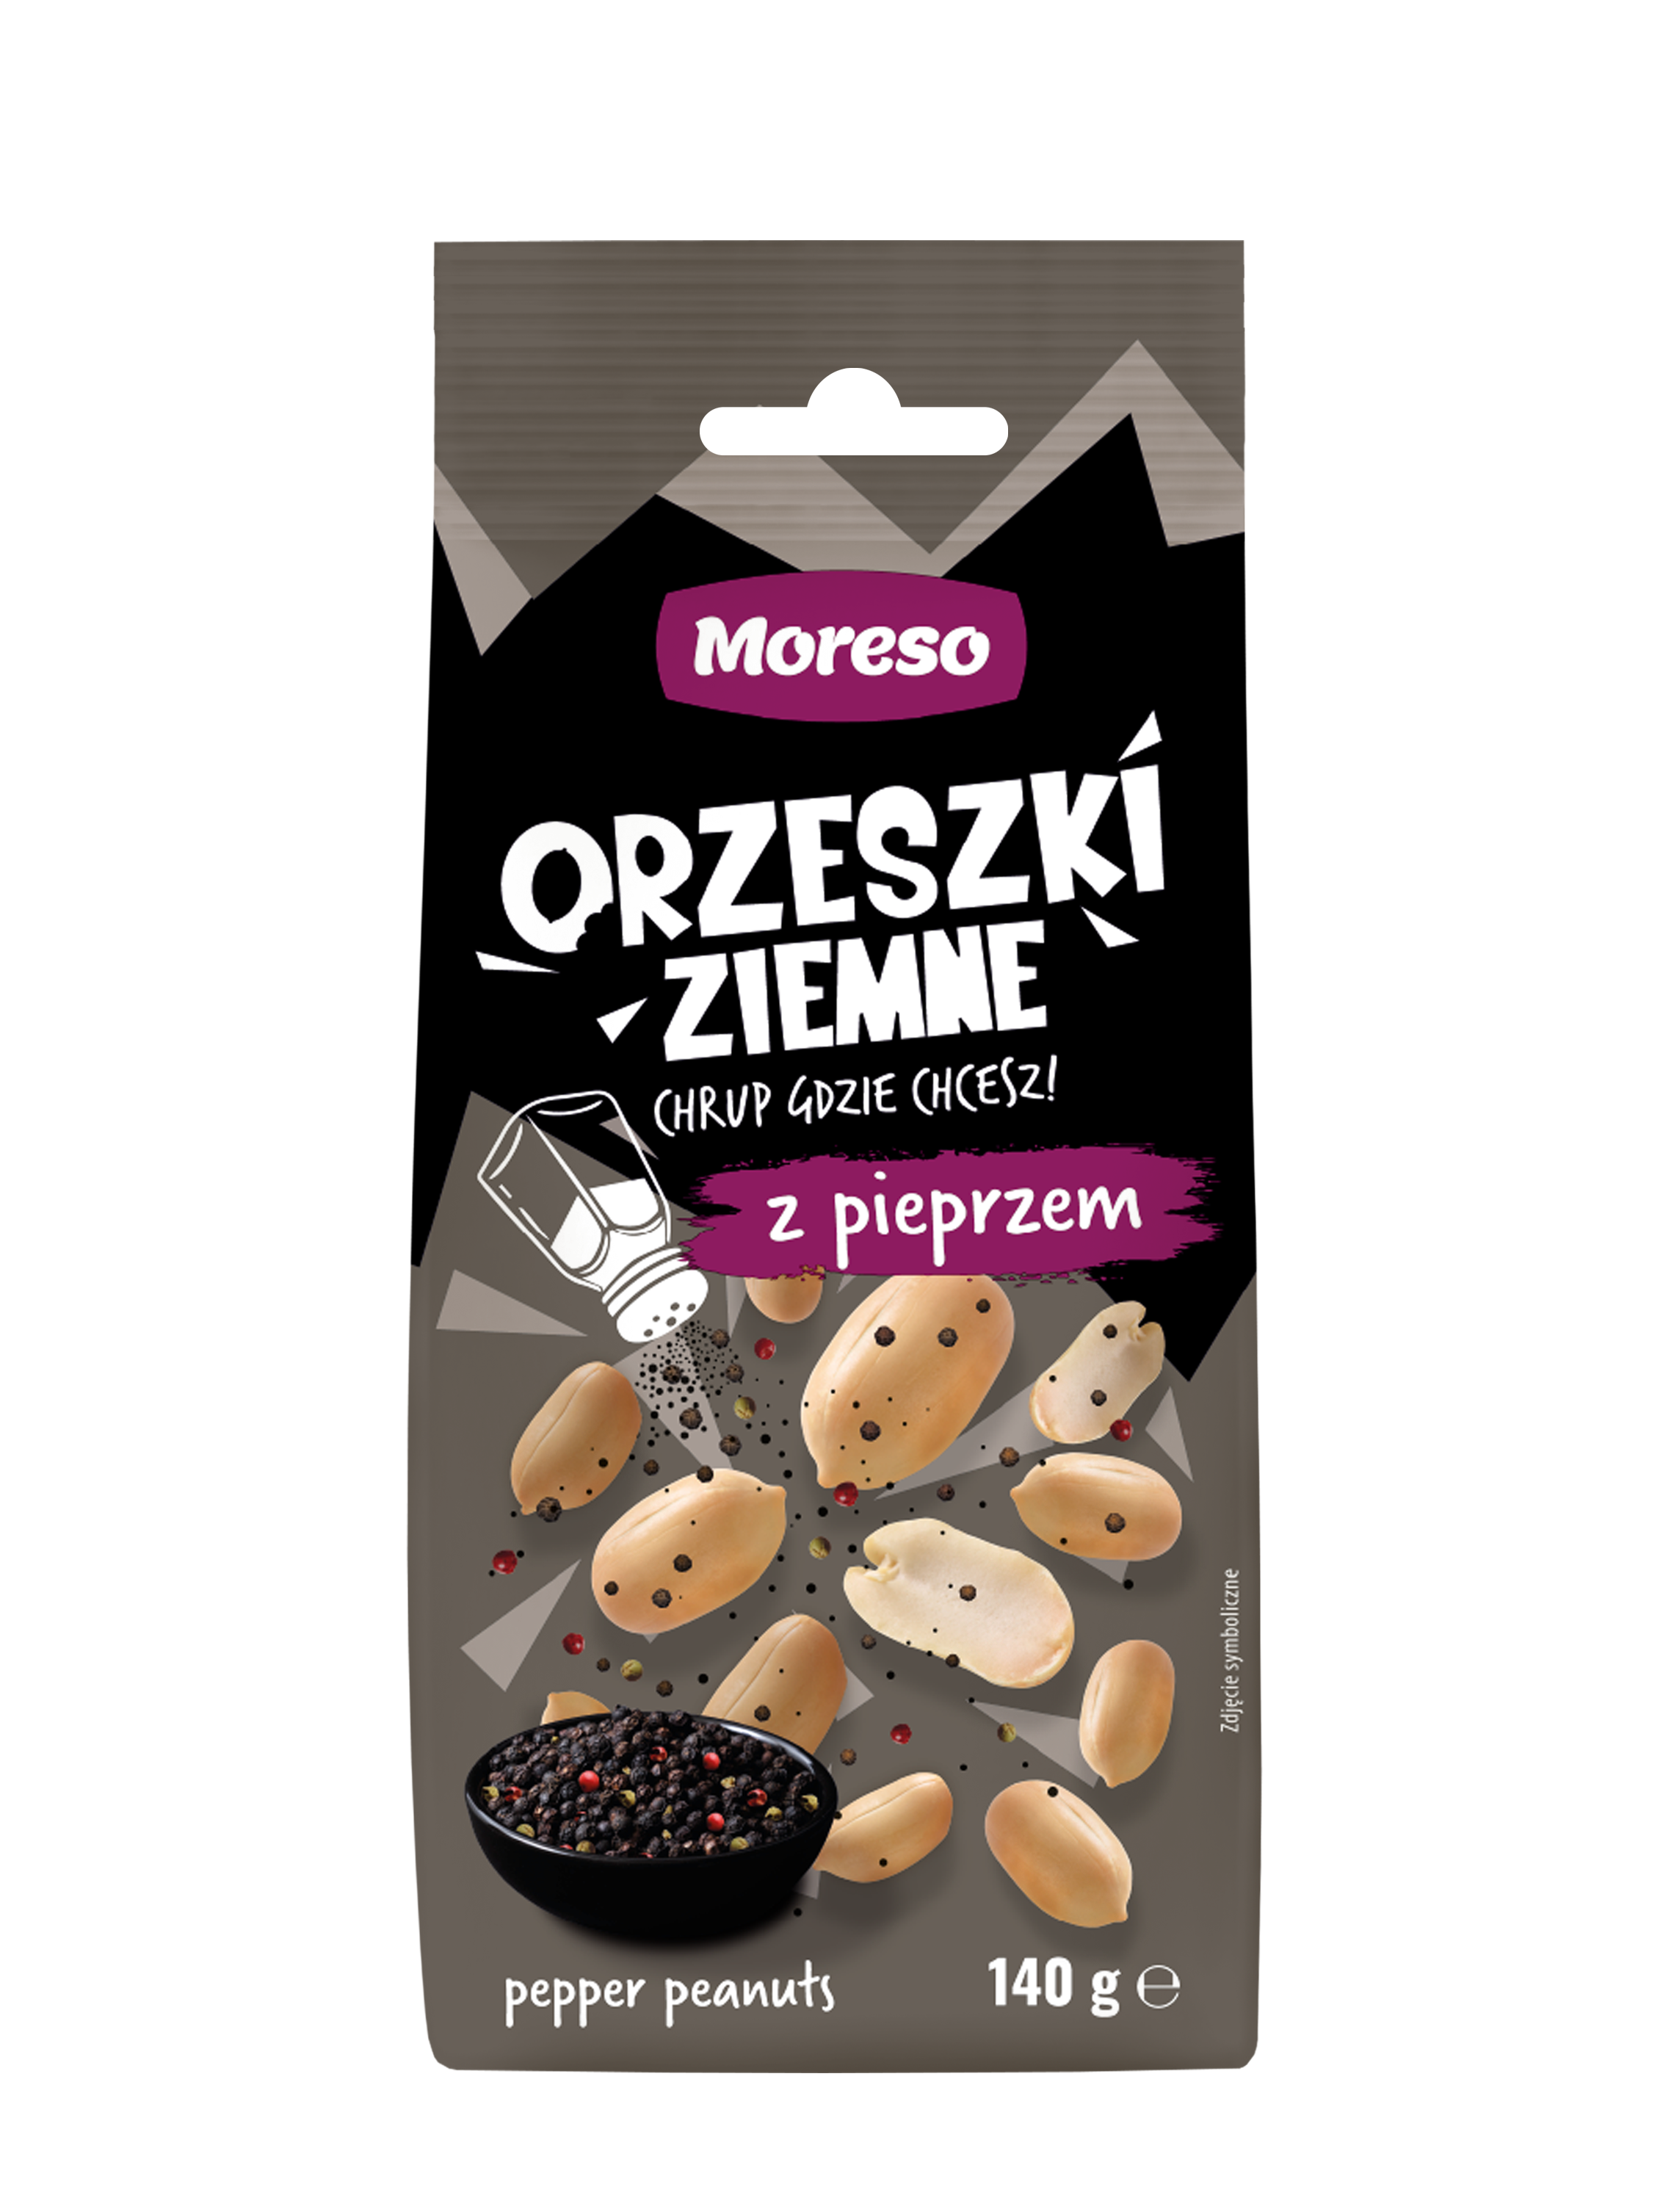 Zobacz ORZESZKI ZIEMNE Z PIEPRZEM 140g na Moreso.pl!